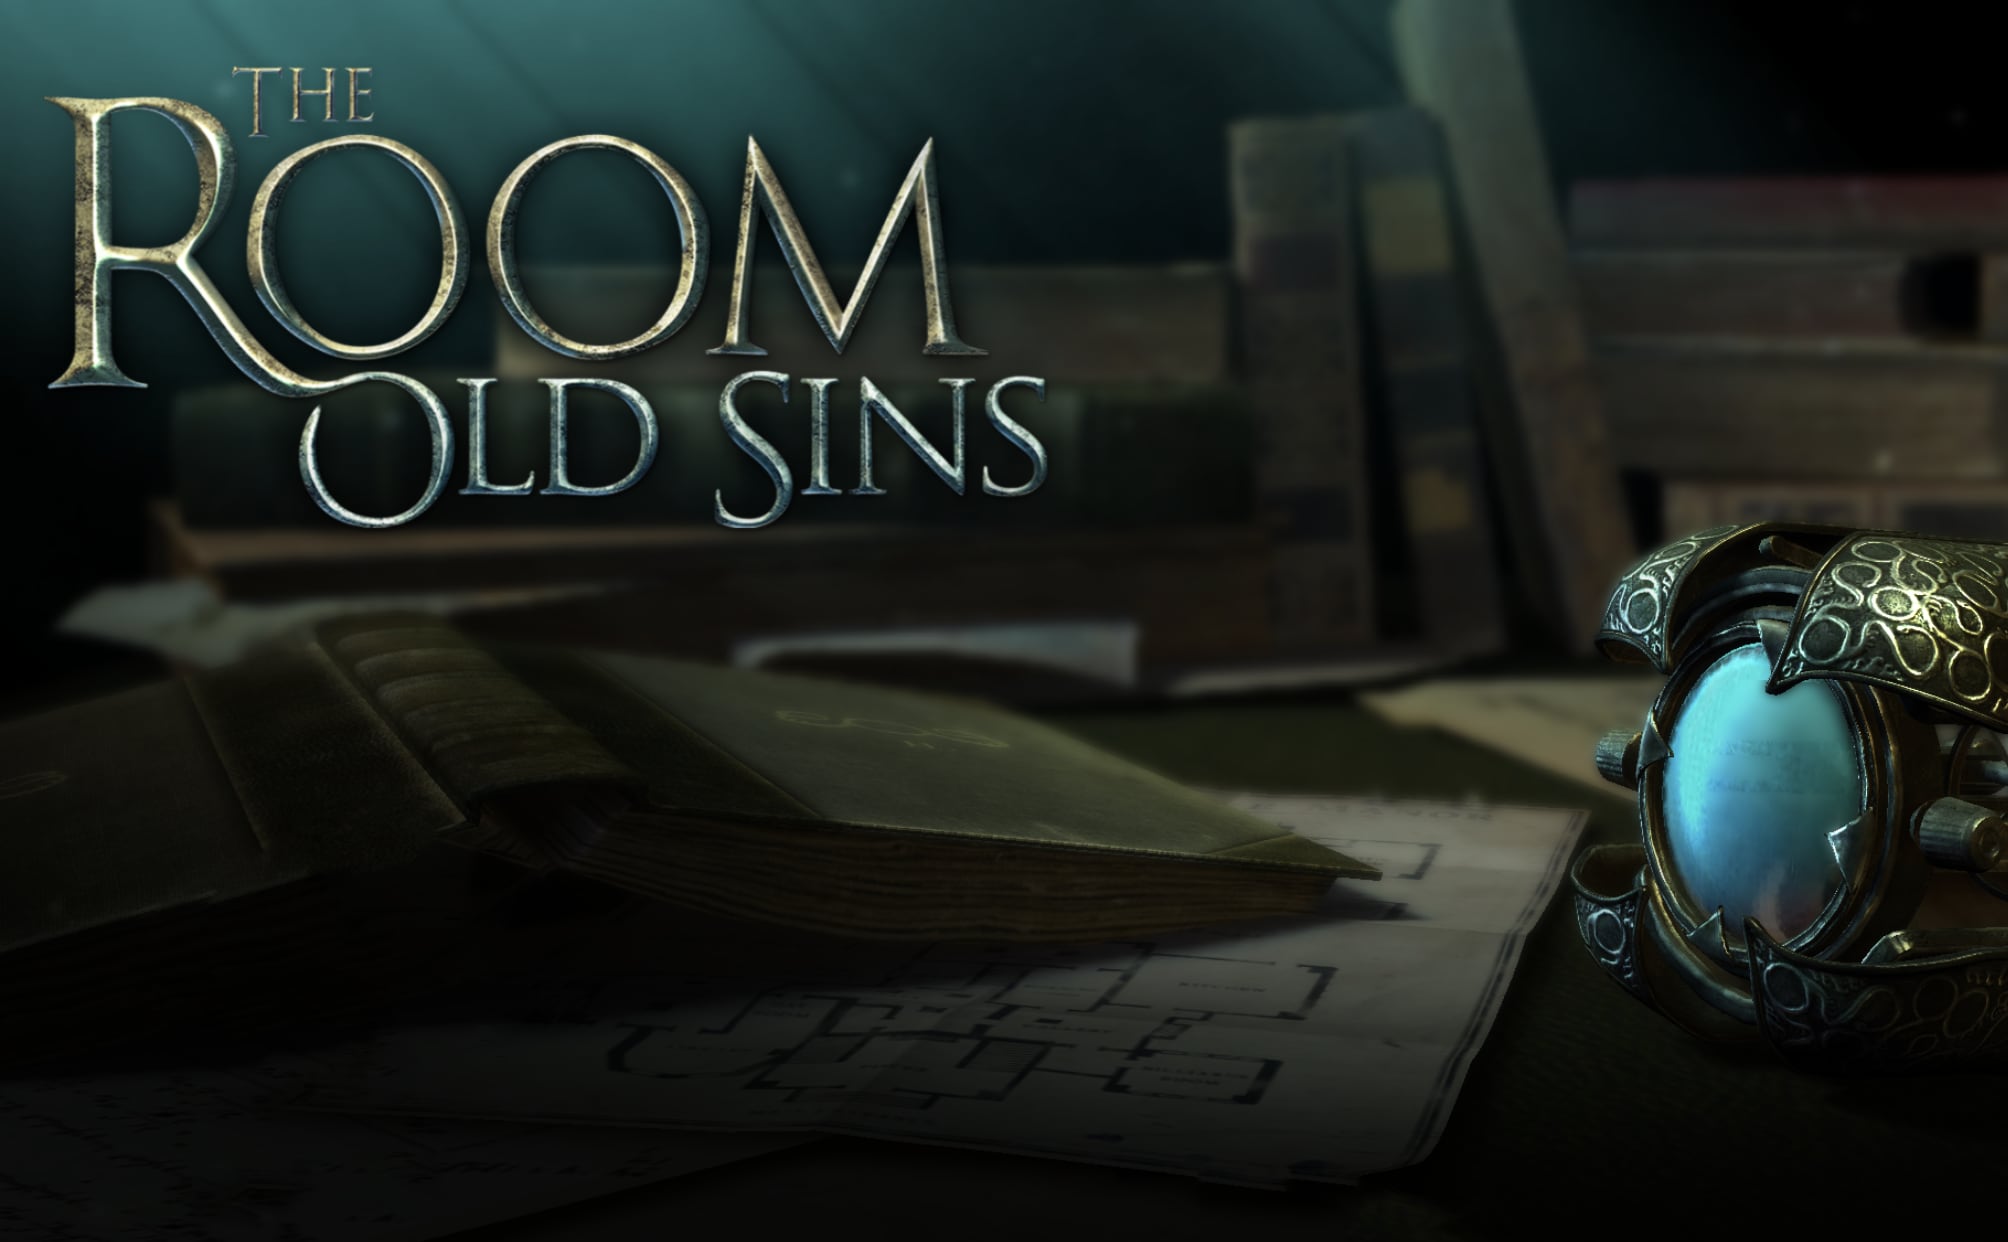 The room old sins là gì?